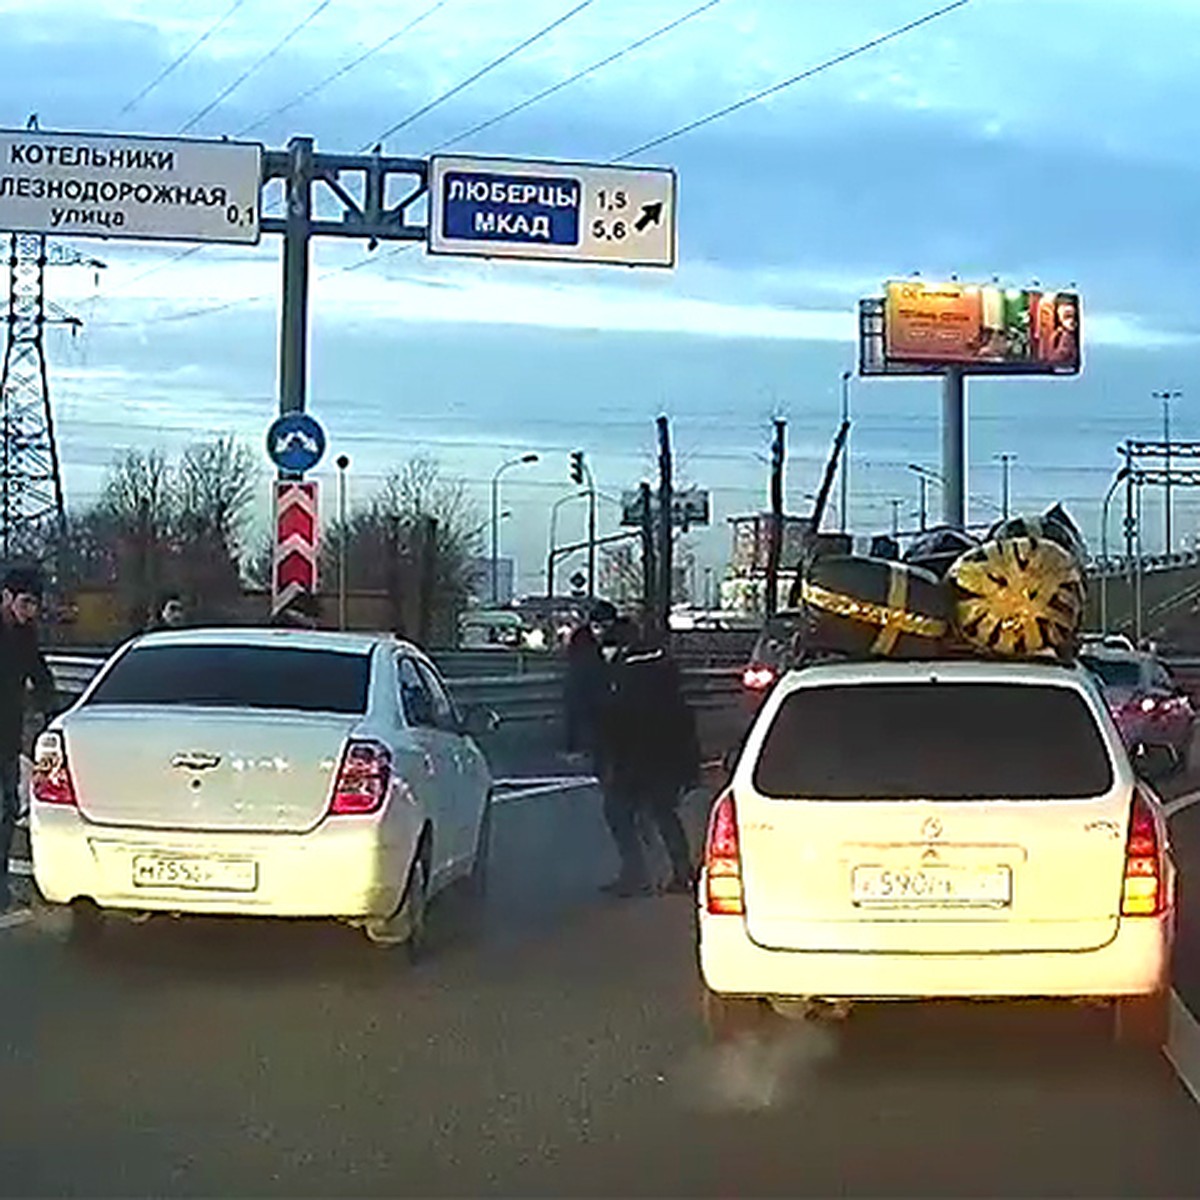 Стрельба на дороге в Подмосковье попала на запись видеорегистратора - KP.RU